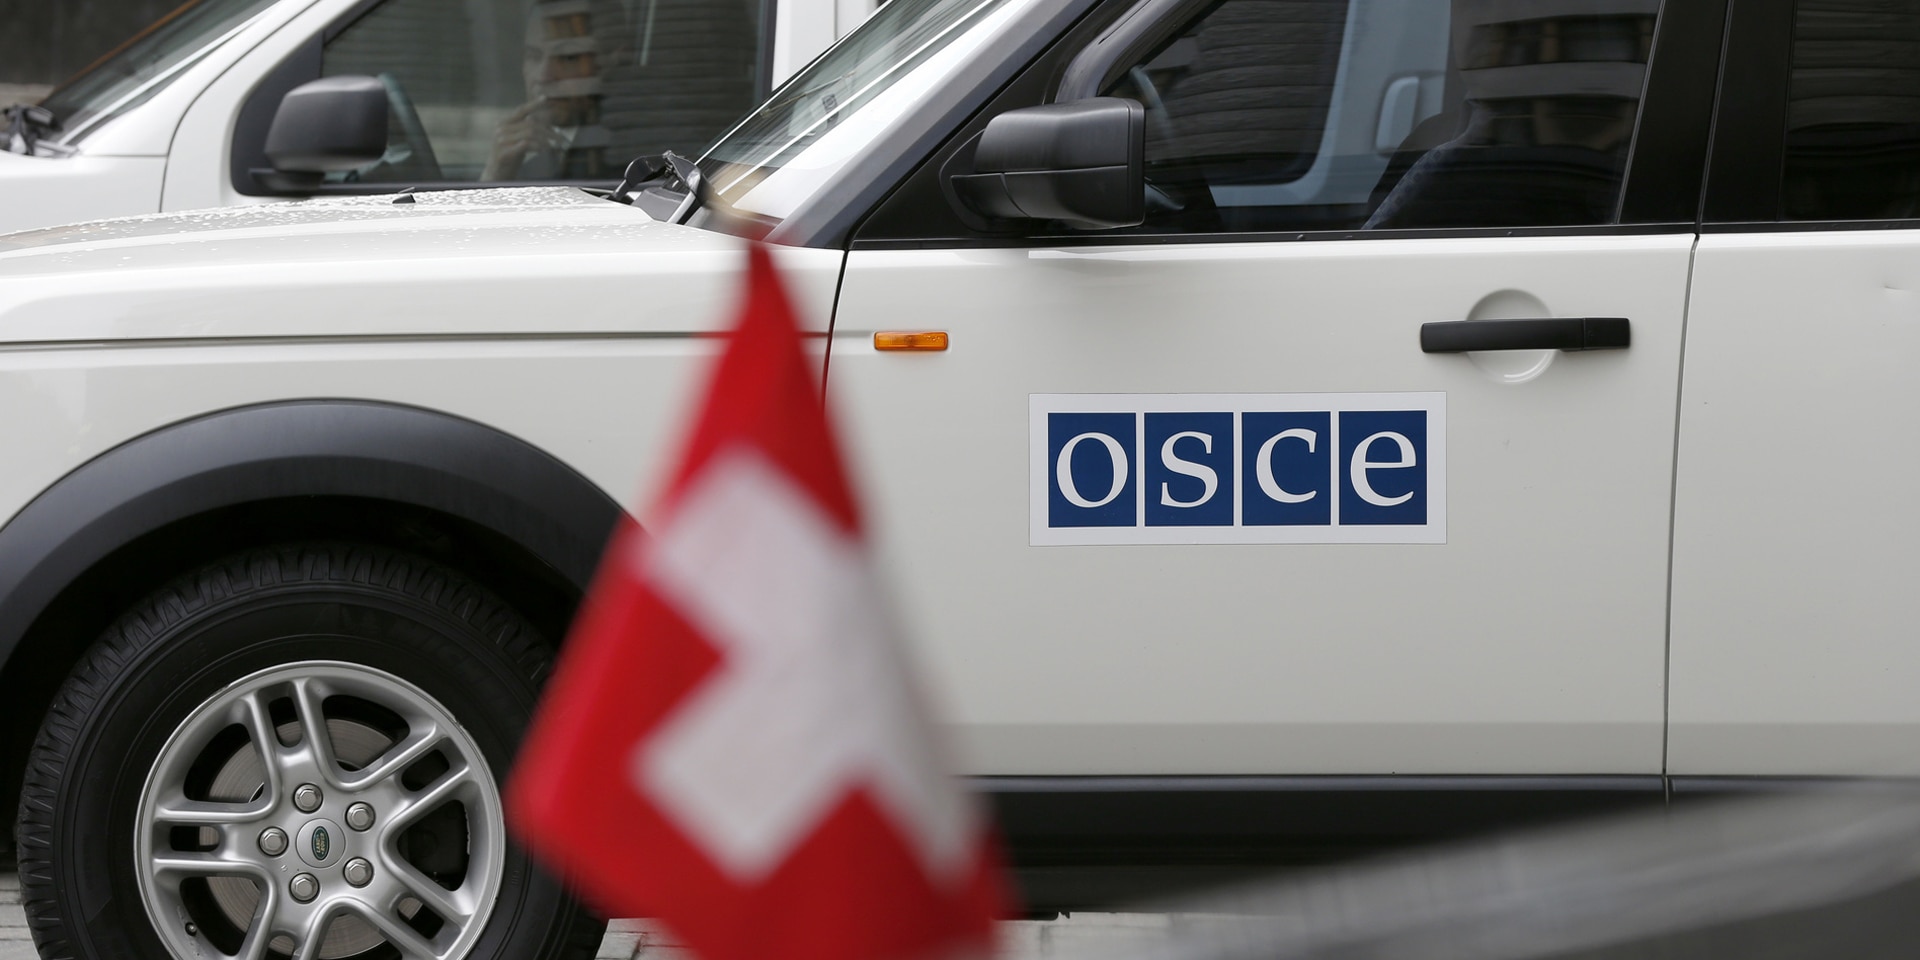 Un véhicule tout-terrain blanc portant l'inscription "OSCE" est placé devant un véhicule noir sur lequel est apposé le drapeau suisse.